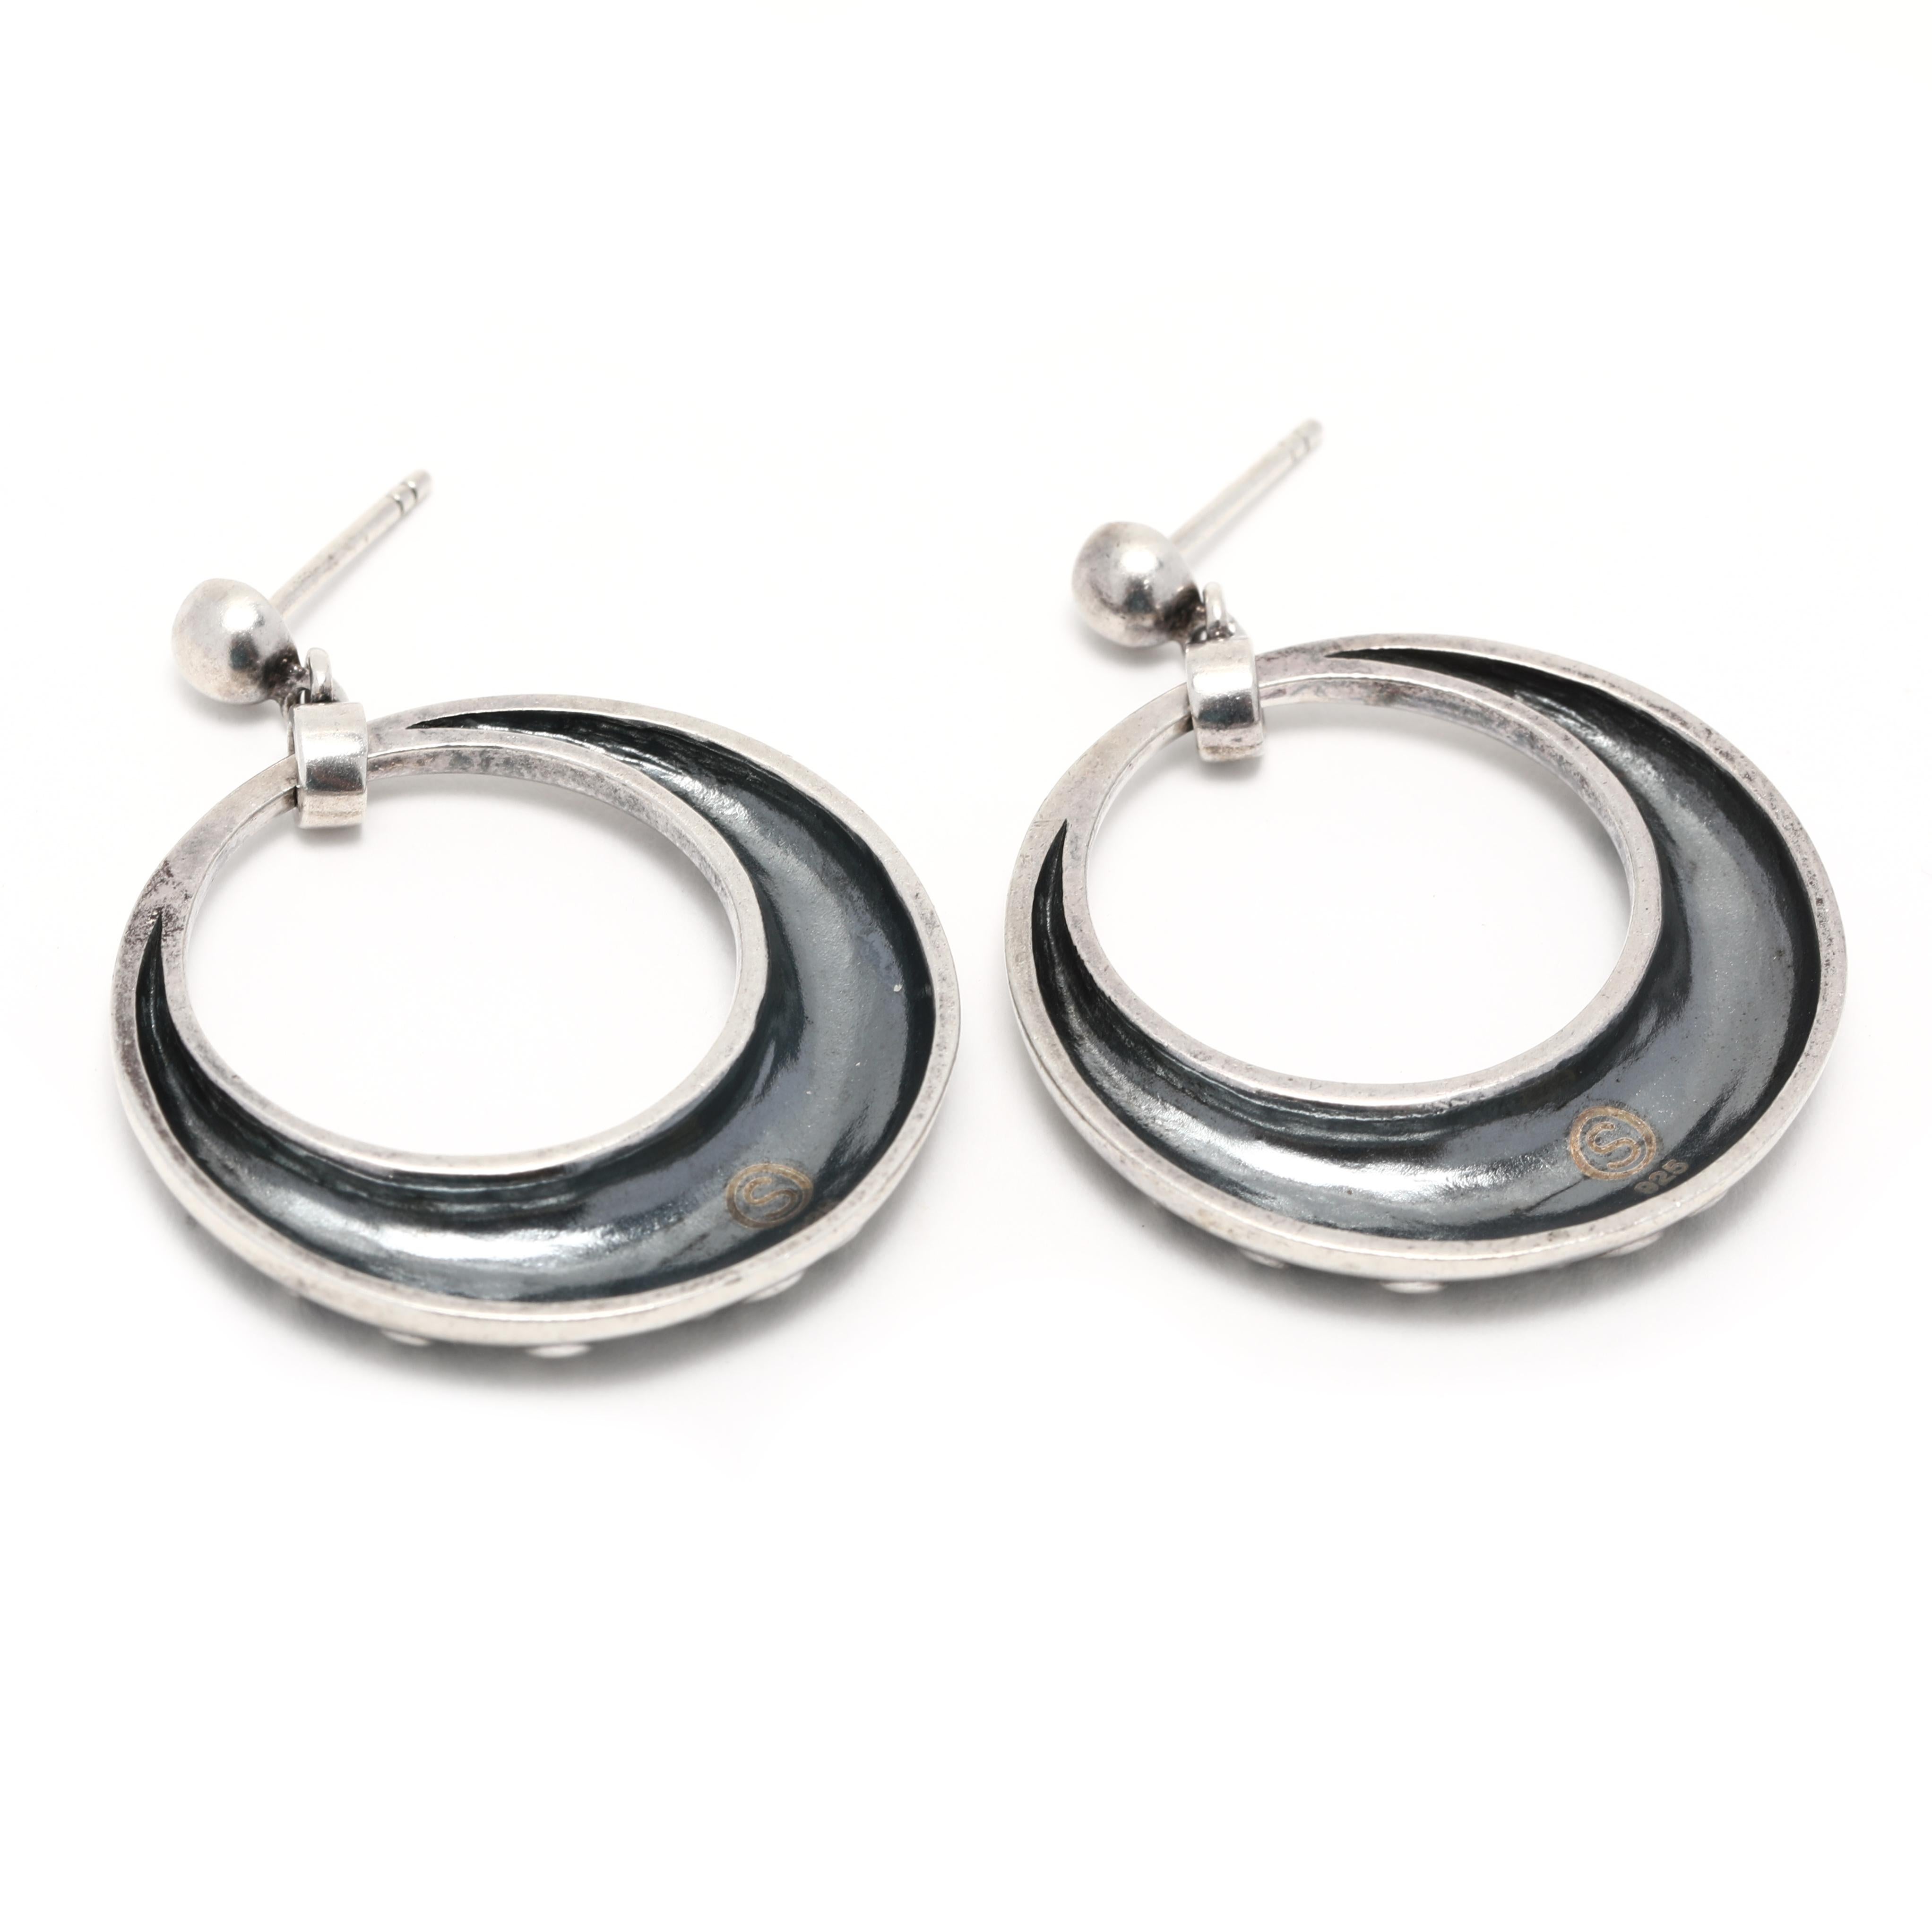 Diese atemberaubenden Vintage offenen Kreis Scroll Detail baumeln Ohrringe sind aus Sterling Silber gefertigt und messen 1 3/8 Zoll in der Länge. Diese einzigartigen silbernen Ohrringe haben ein zartes, offenes Kreisdetail, das perfekt für jede